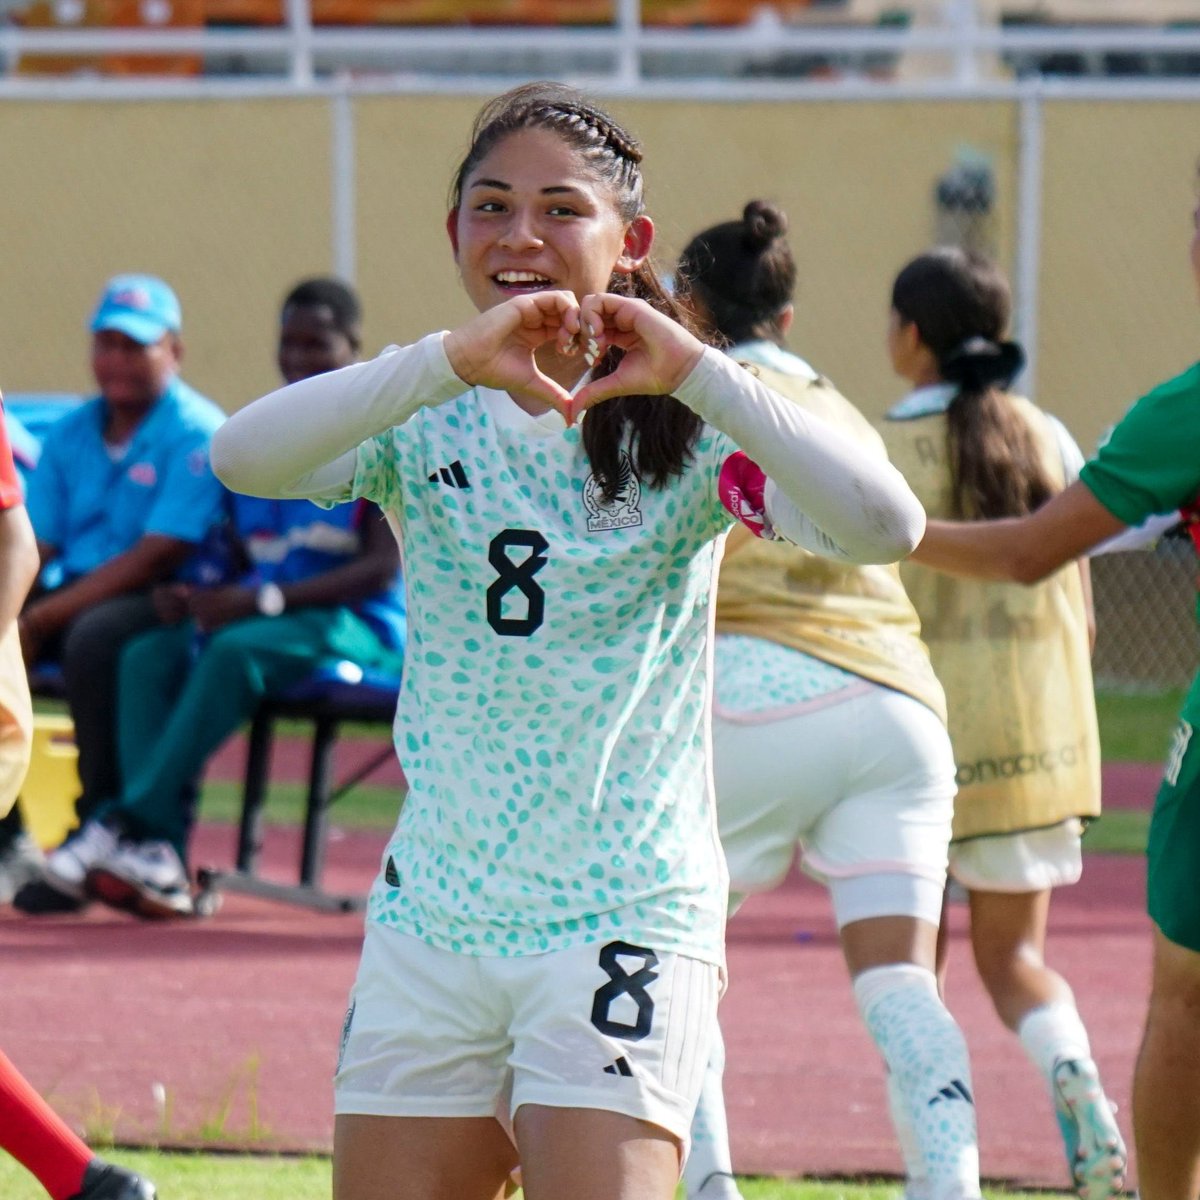 MÉXICO CAMPEÓN PREMUNDIAL #Sub20FEM 🇲🇽🏆

Nuestra @Rayadas @FtimaServn2 anotó el gol del triunfo 

¡Enhorabuena campeonas, muchas felicidades!

@Miseleccionfem